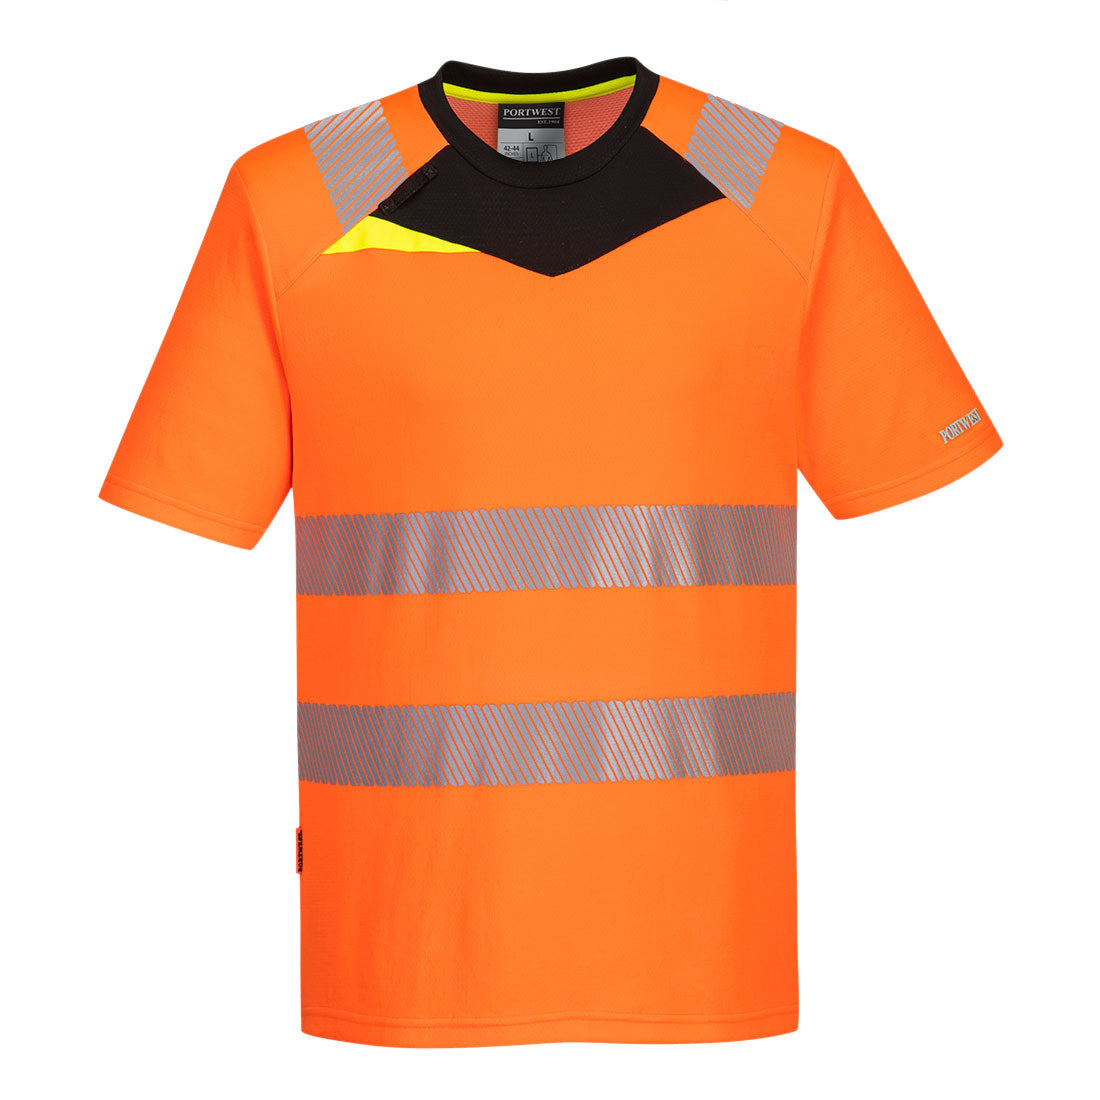 Portwest DX4 Hi-Vis T-Shirt Short Sleeve Orange Black